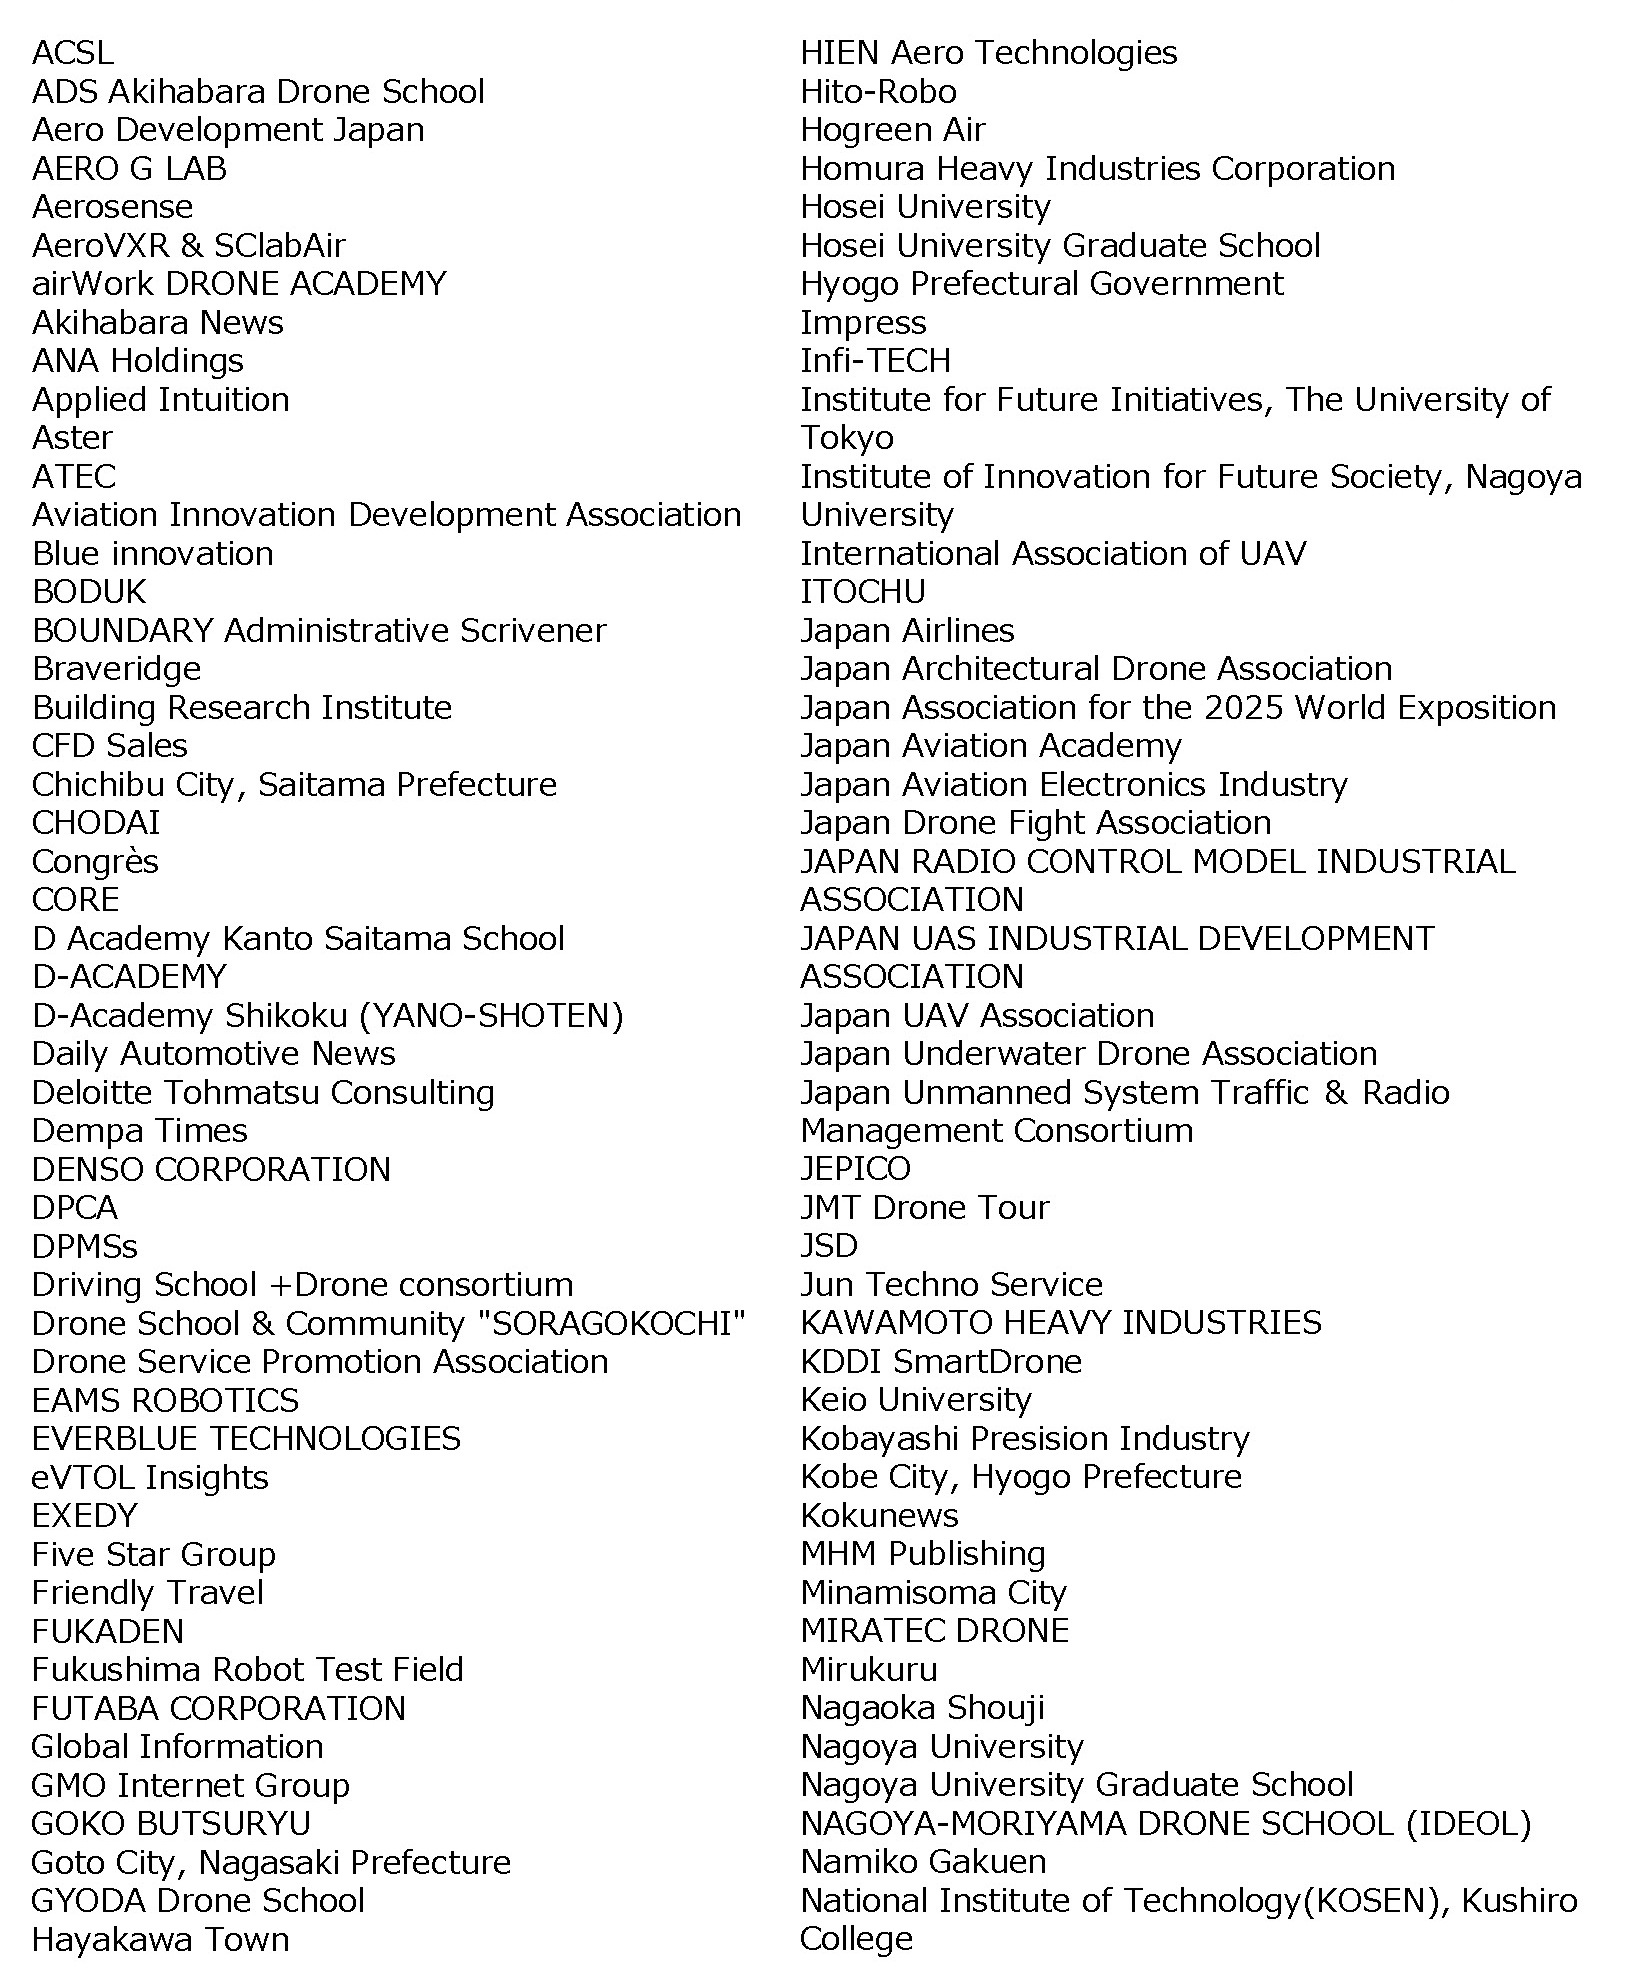 List of Exhibitors 2022